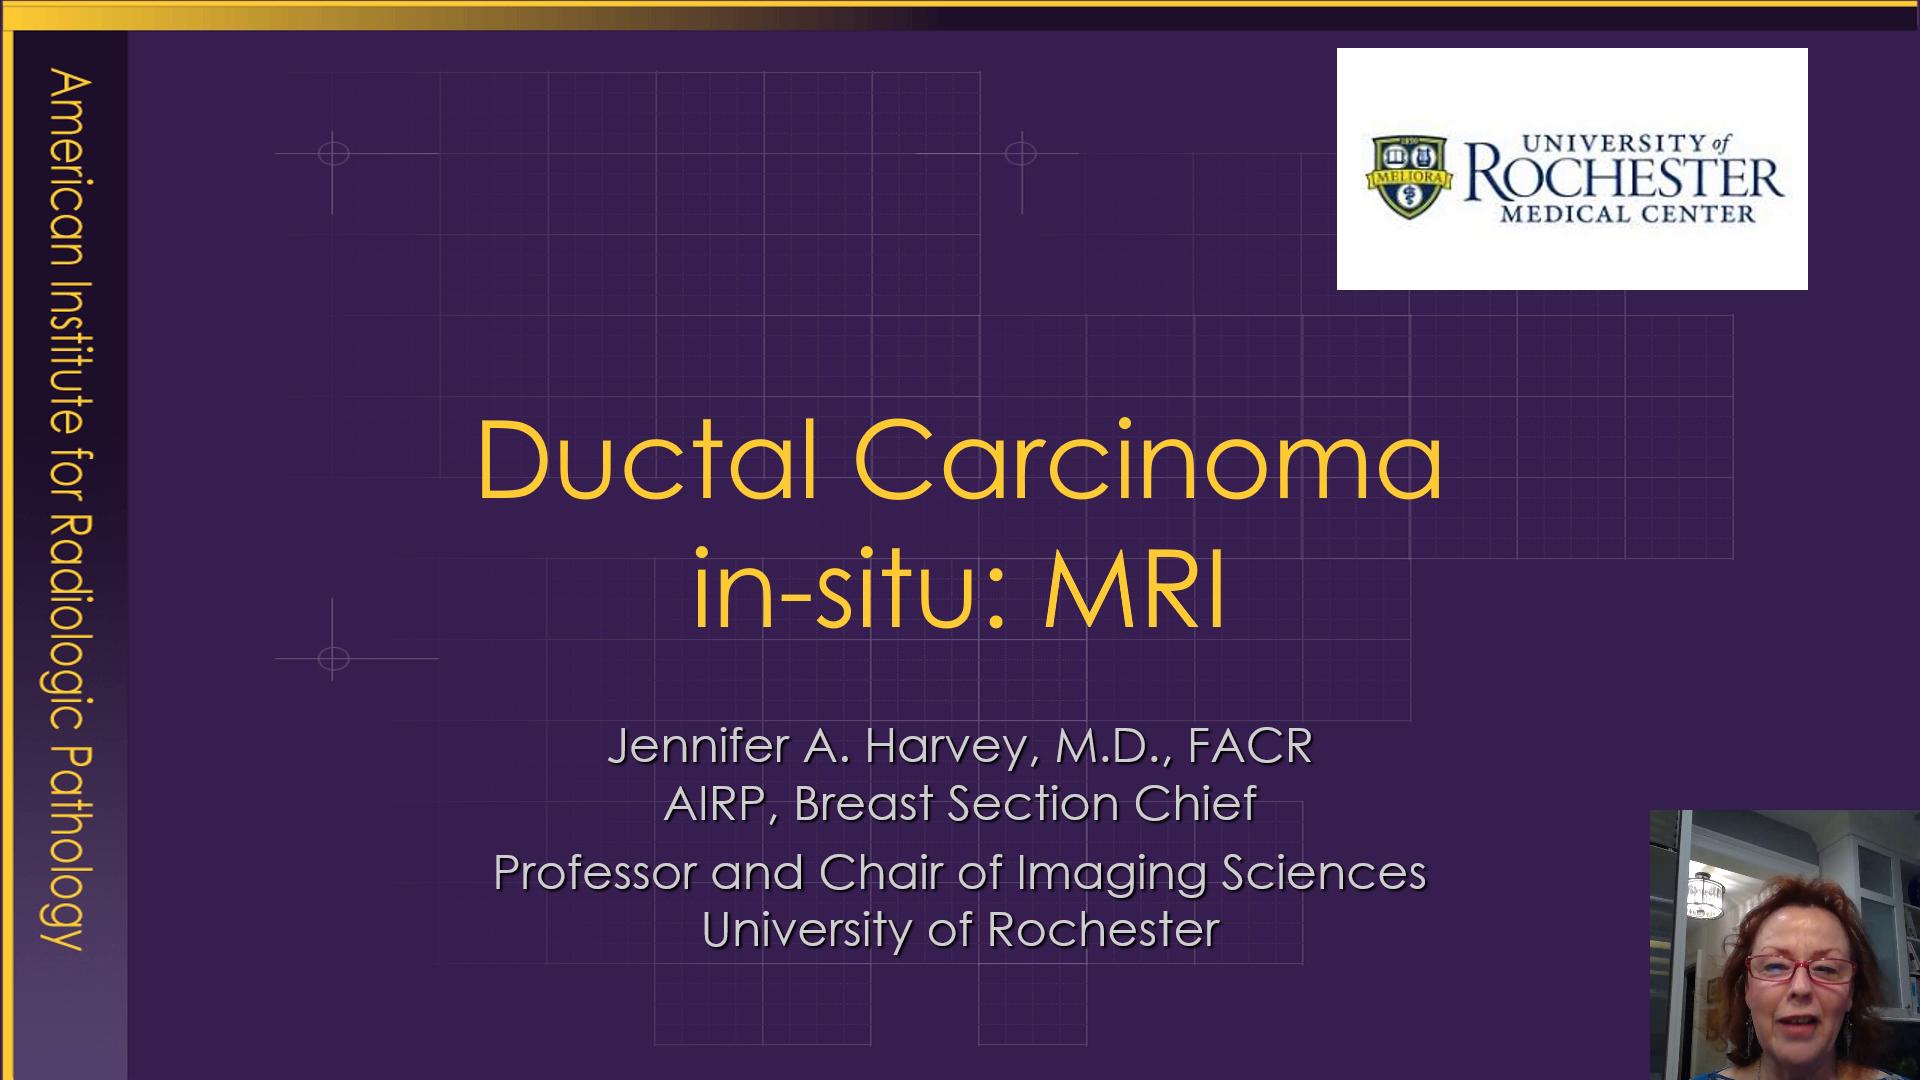 Ductal Carcinoma in-situ: MRI